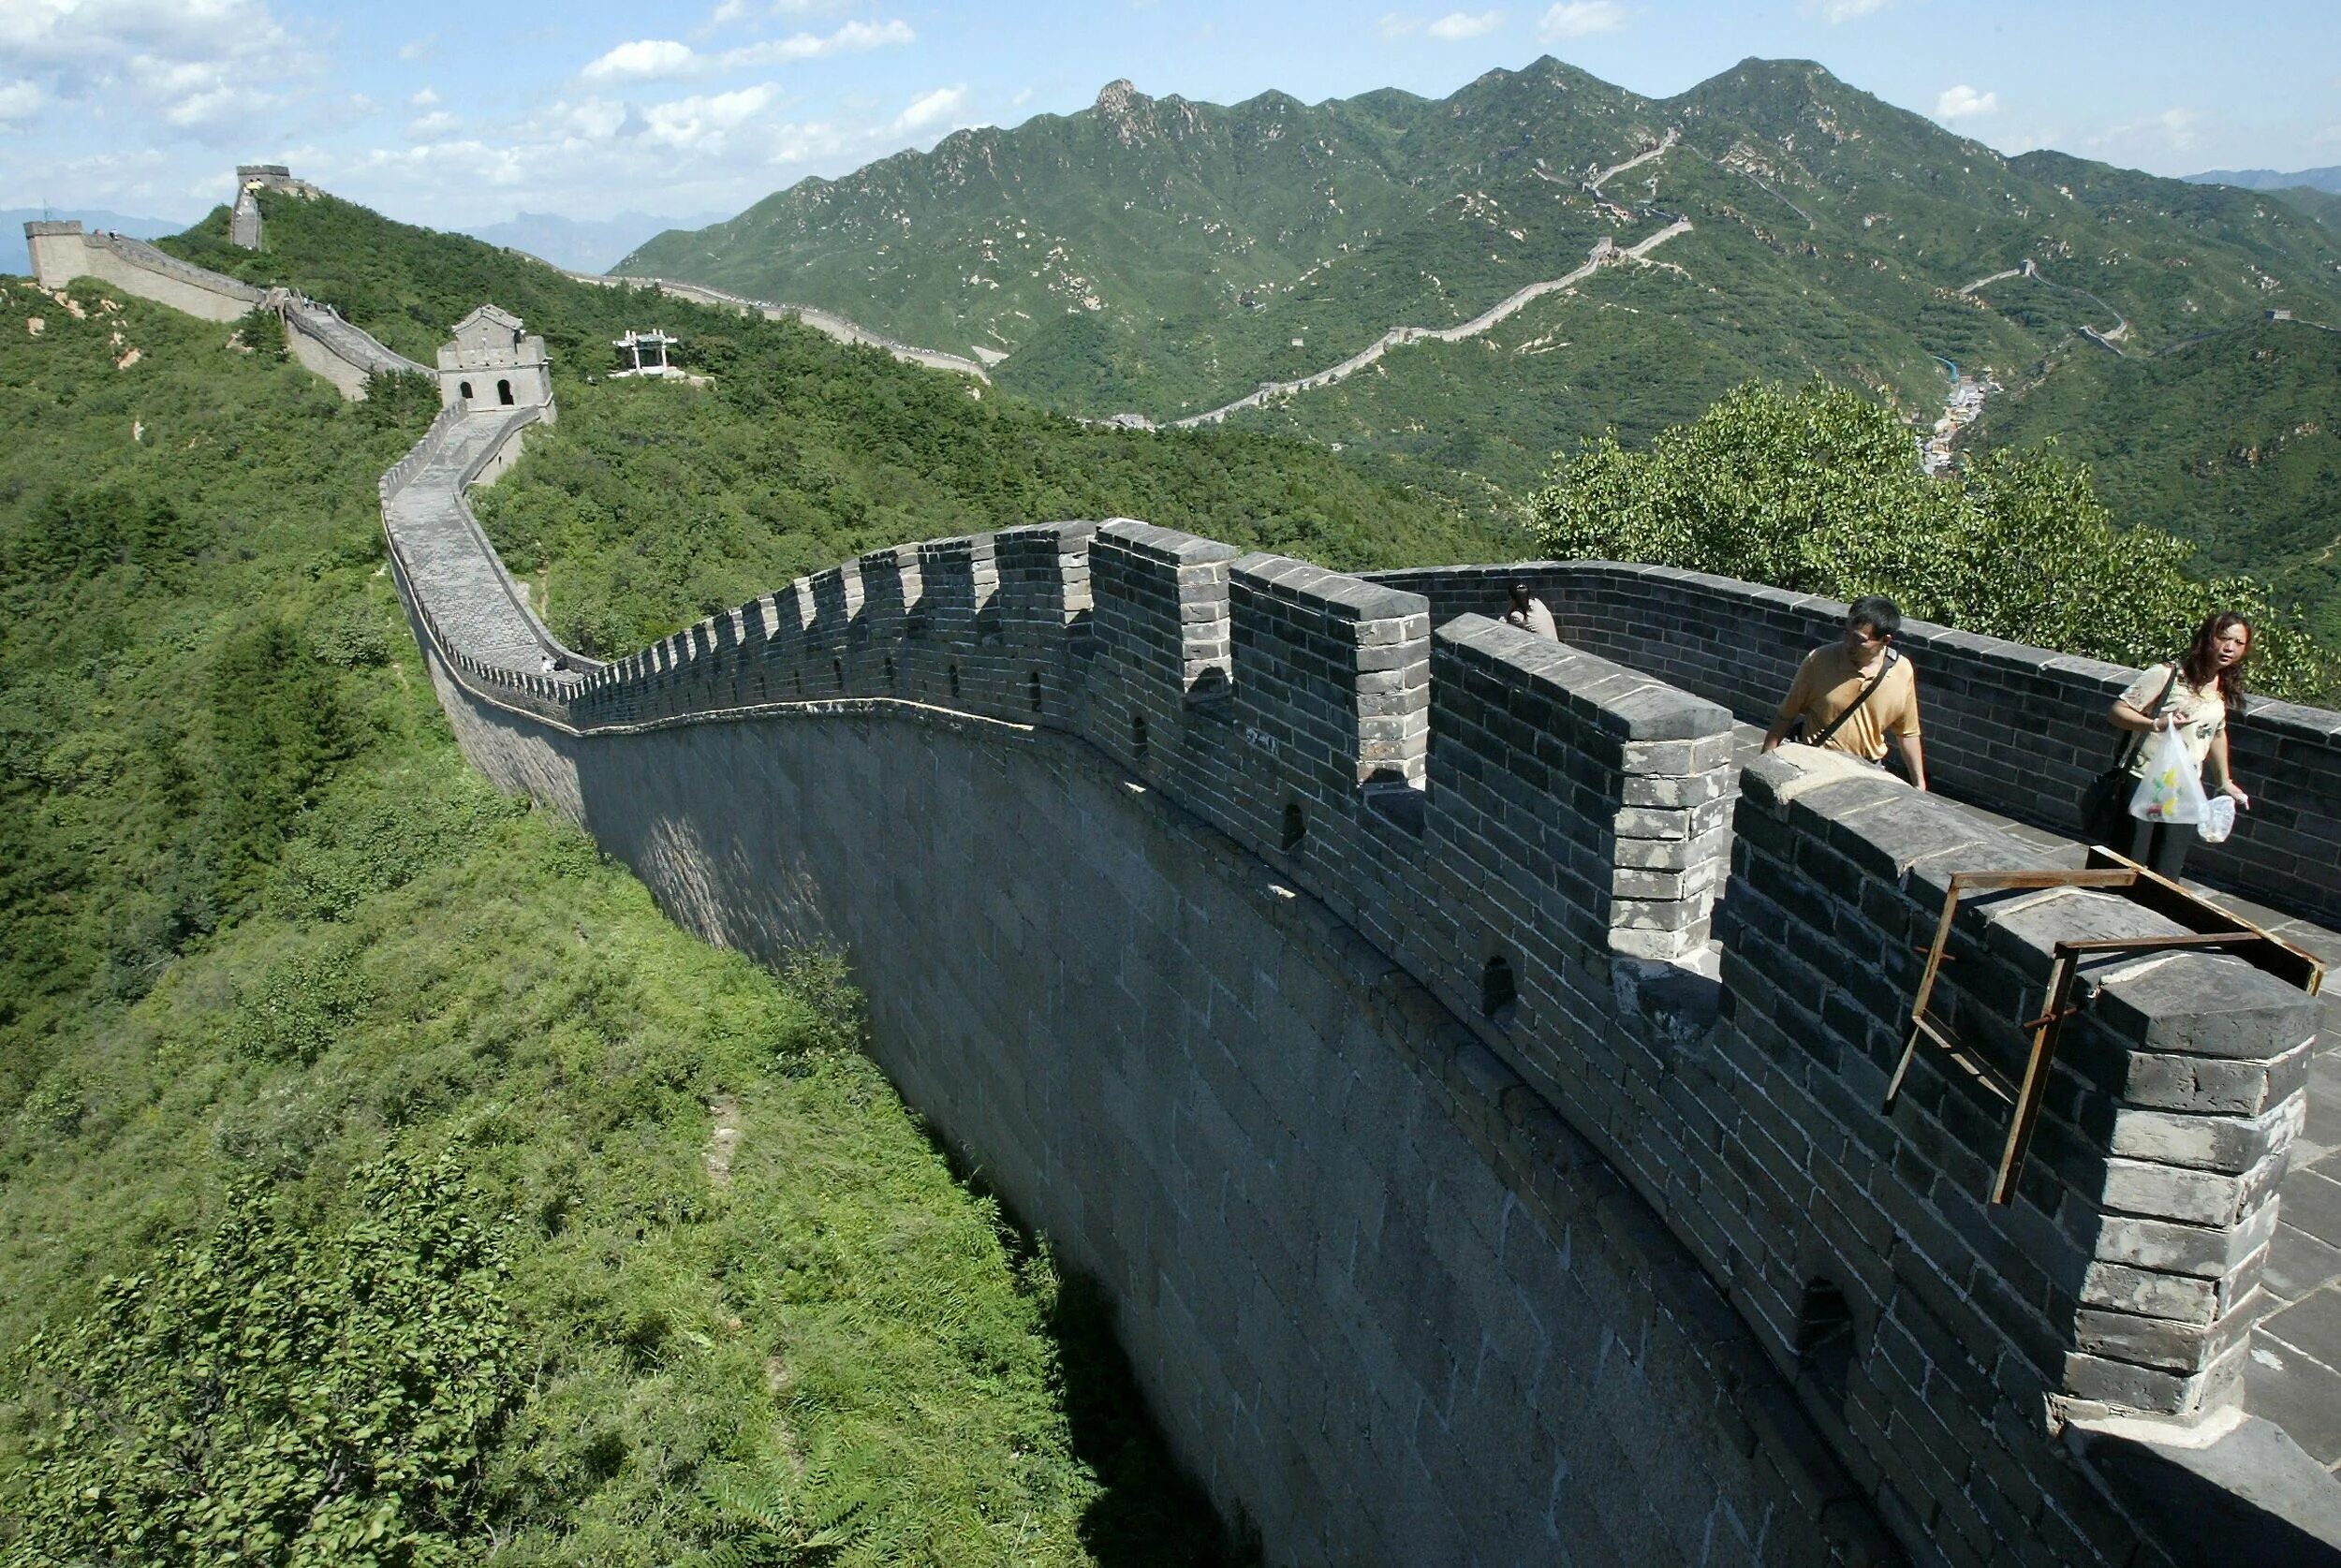 Части великой китайской стены. Китайская стена Северный Китай. Китайская стена вид сверху. Великая китайская стена разрушение. Великая китайская стена разрушенные участки.